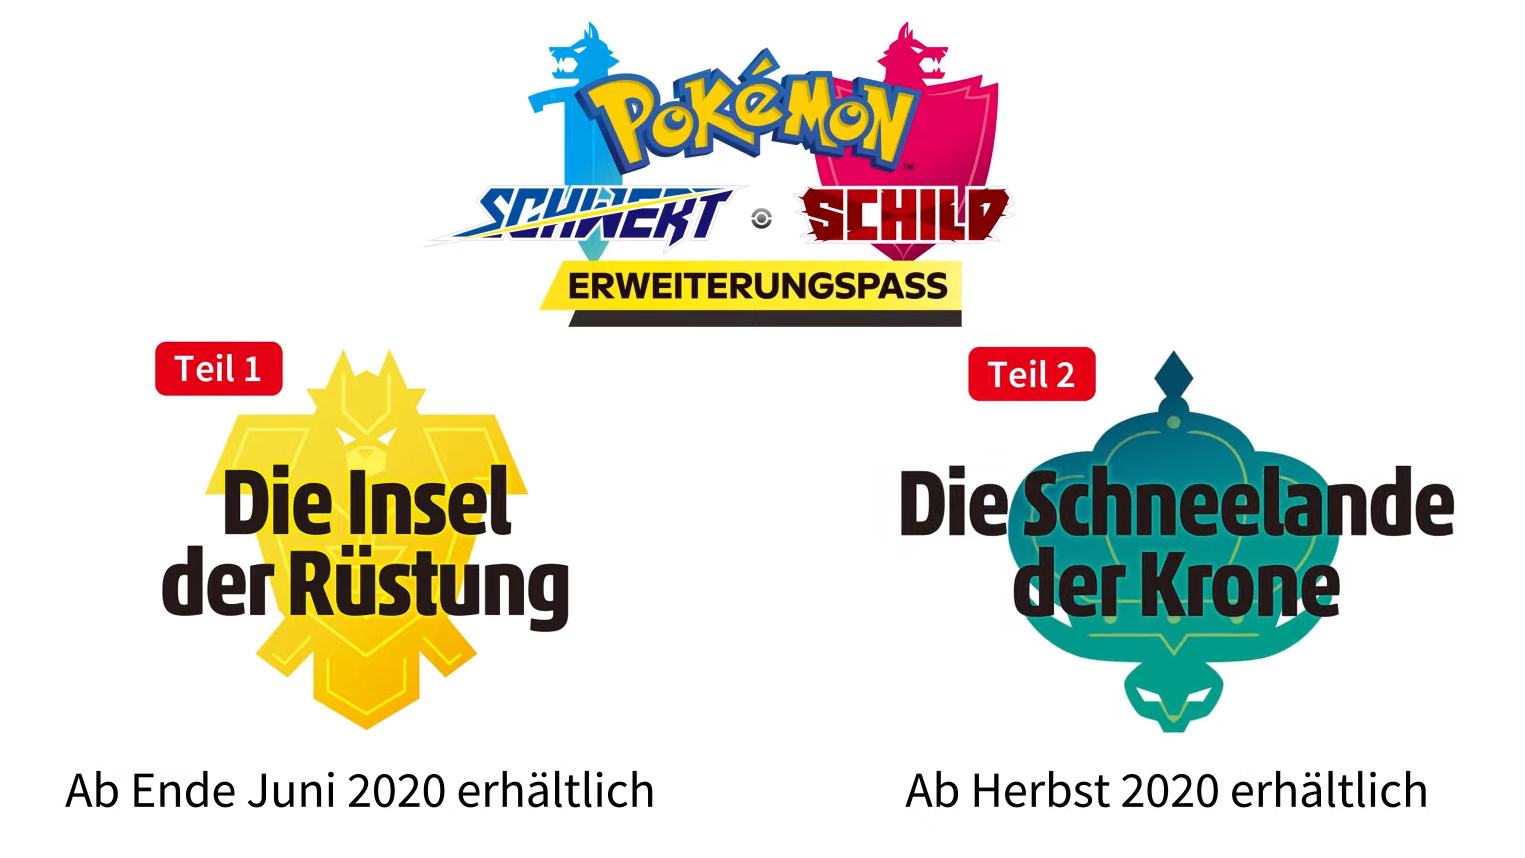 Pokémon Schwert & Schild 2020 zwei erhält News - Erweiterungen